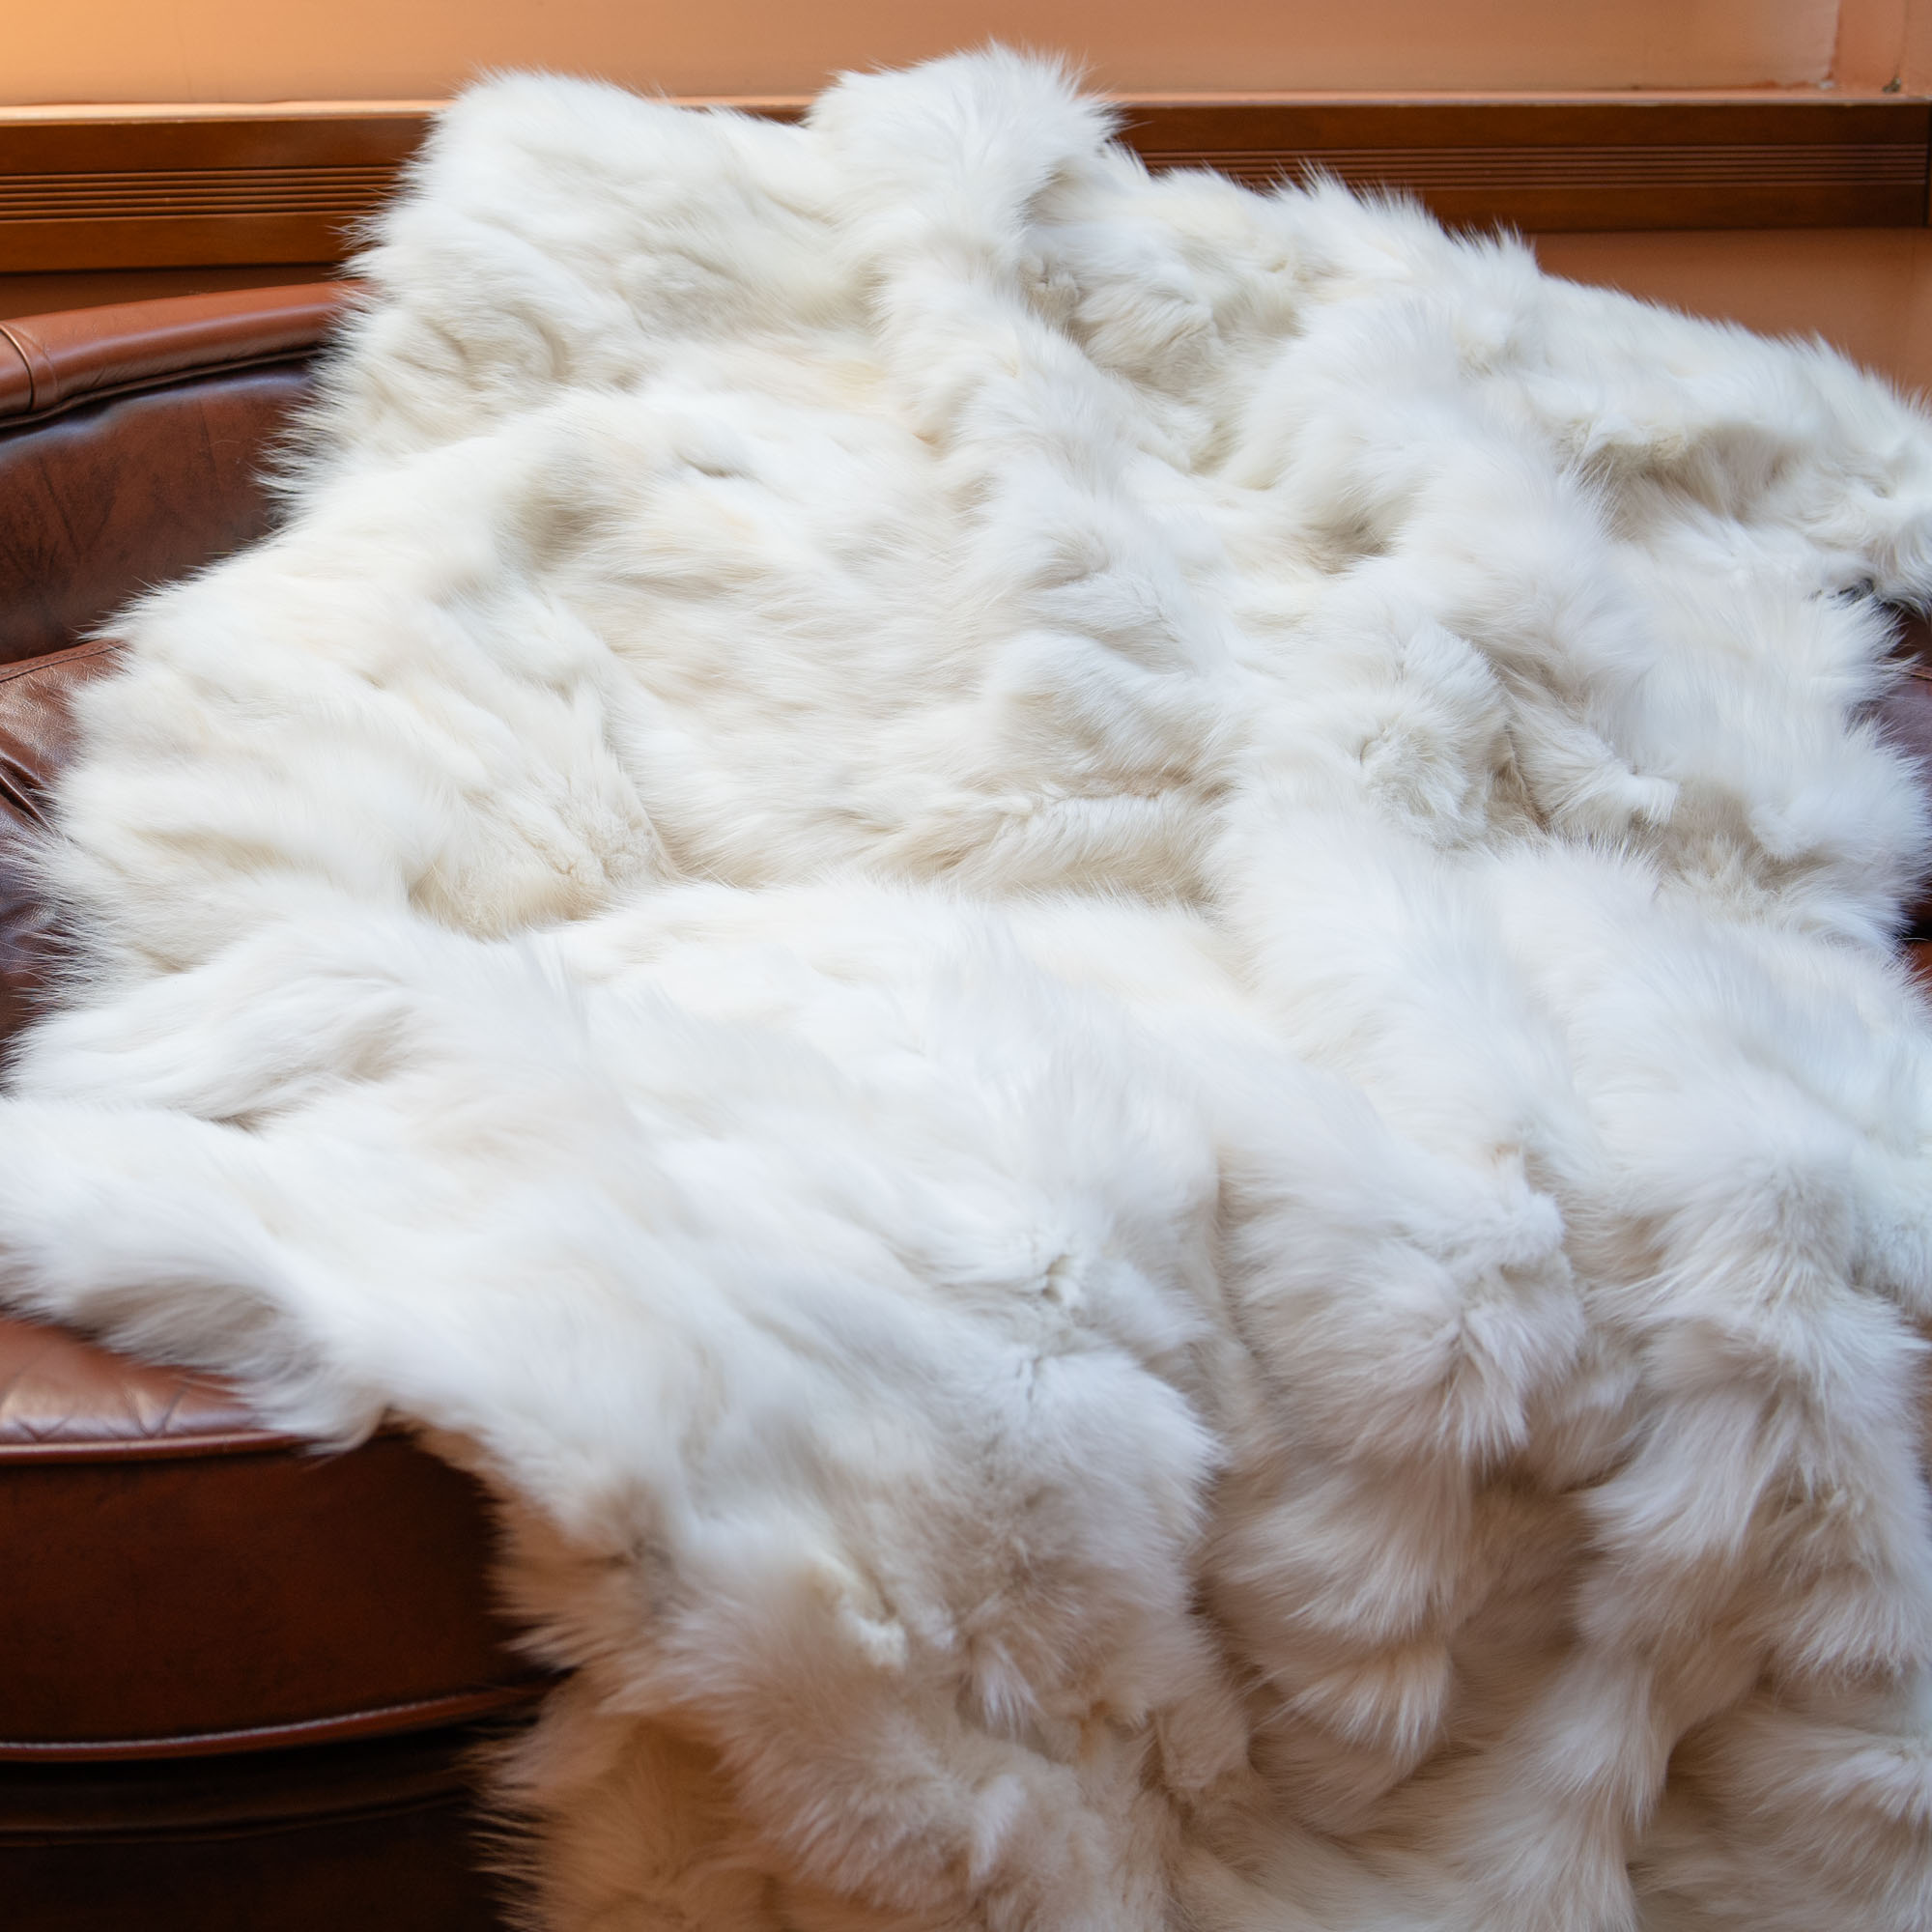 λευκή γούνινη κουβέρτα αλεπούς